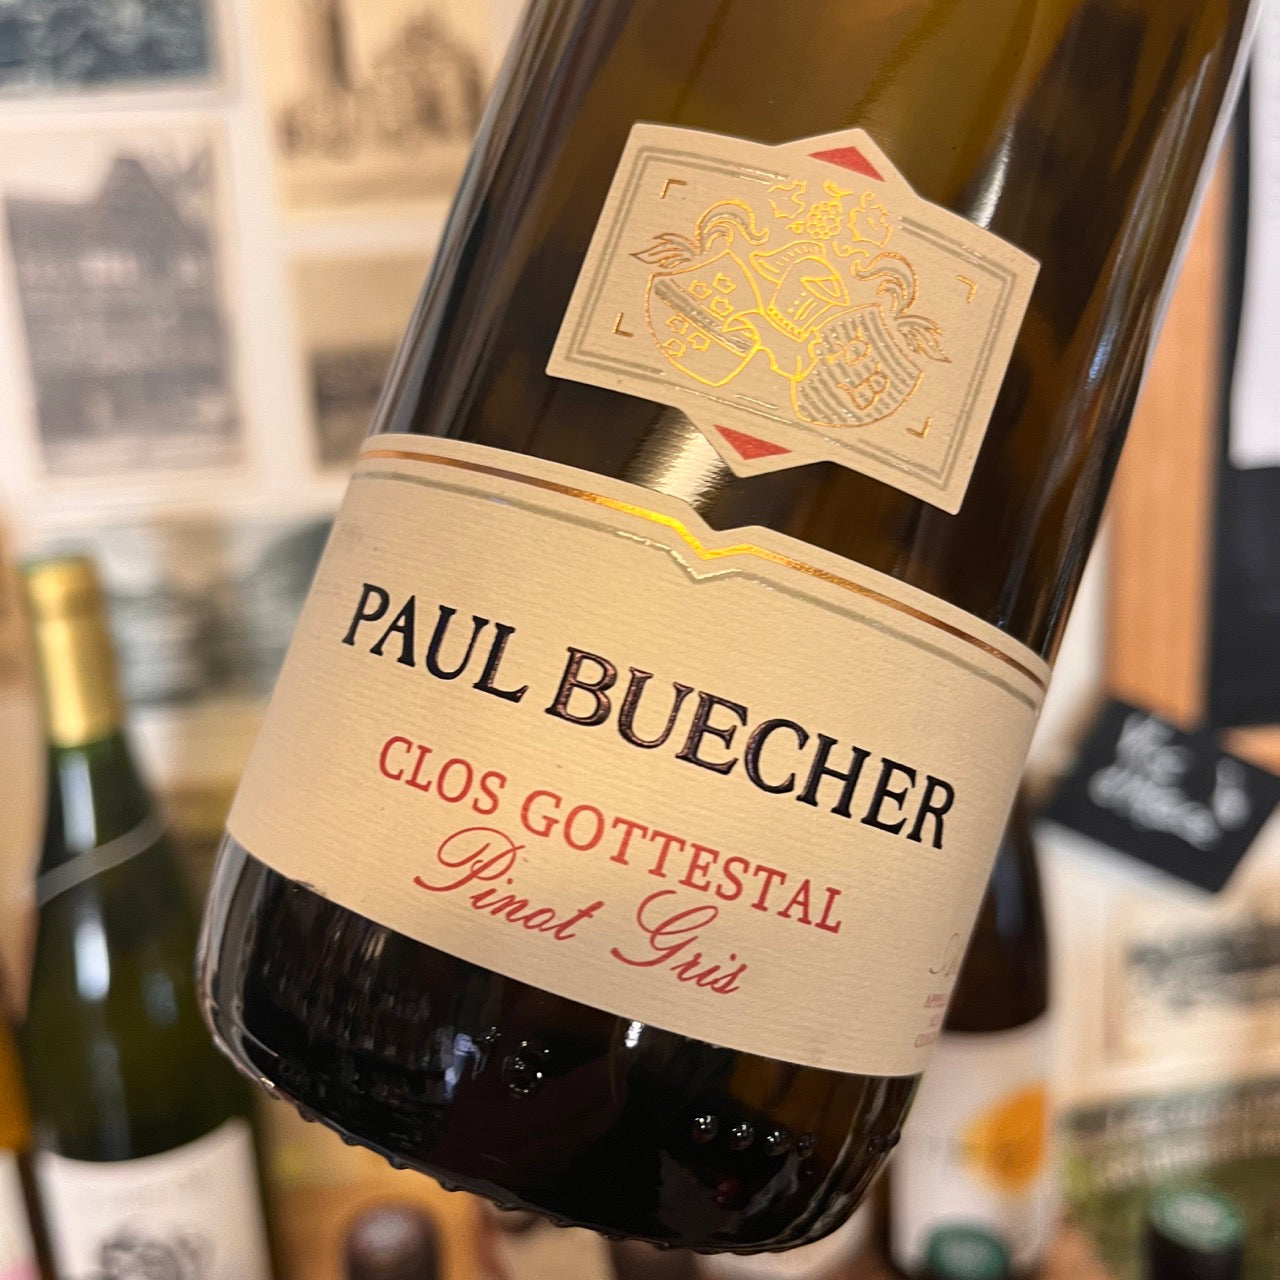 Clos Gottestal Pinot Gris 2019 - Paul Buecher - JusdelaVigne